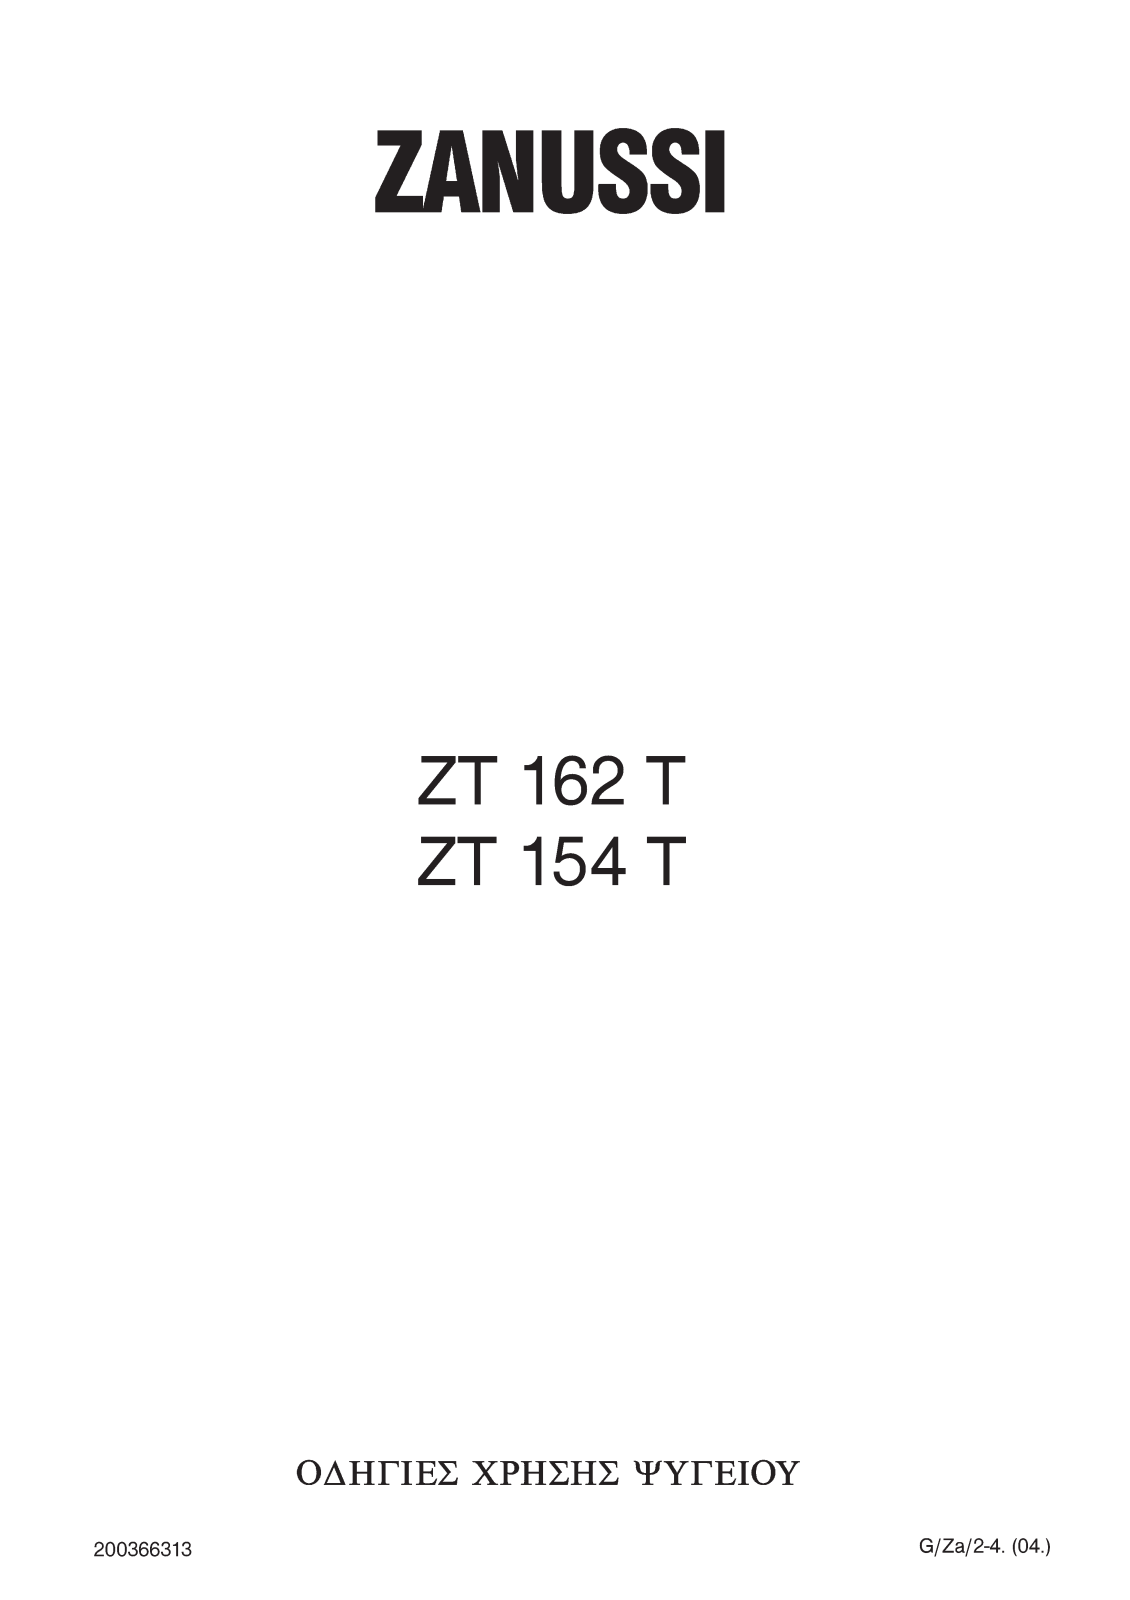 Zanussi ZT 154 T, ZT 162 T User Manual